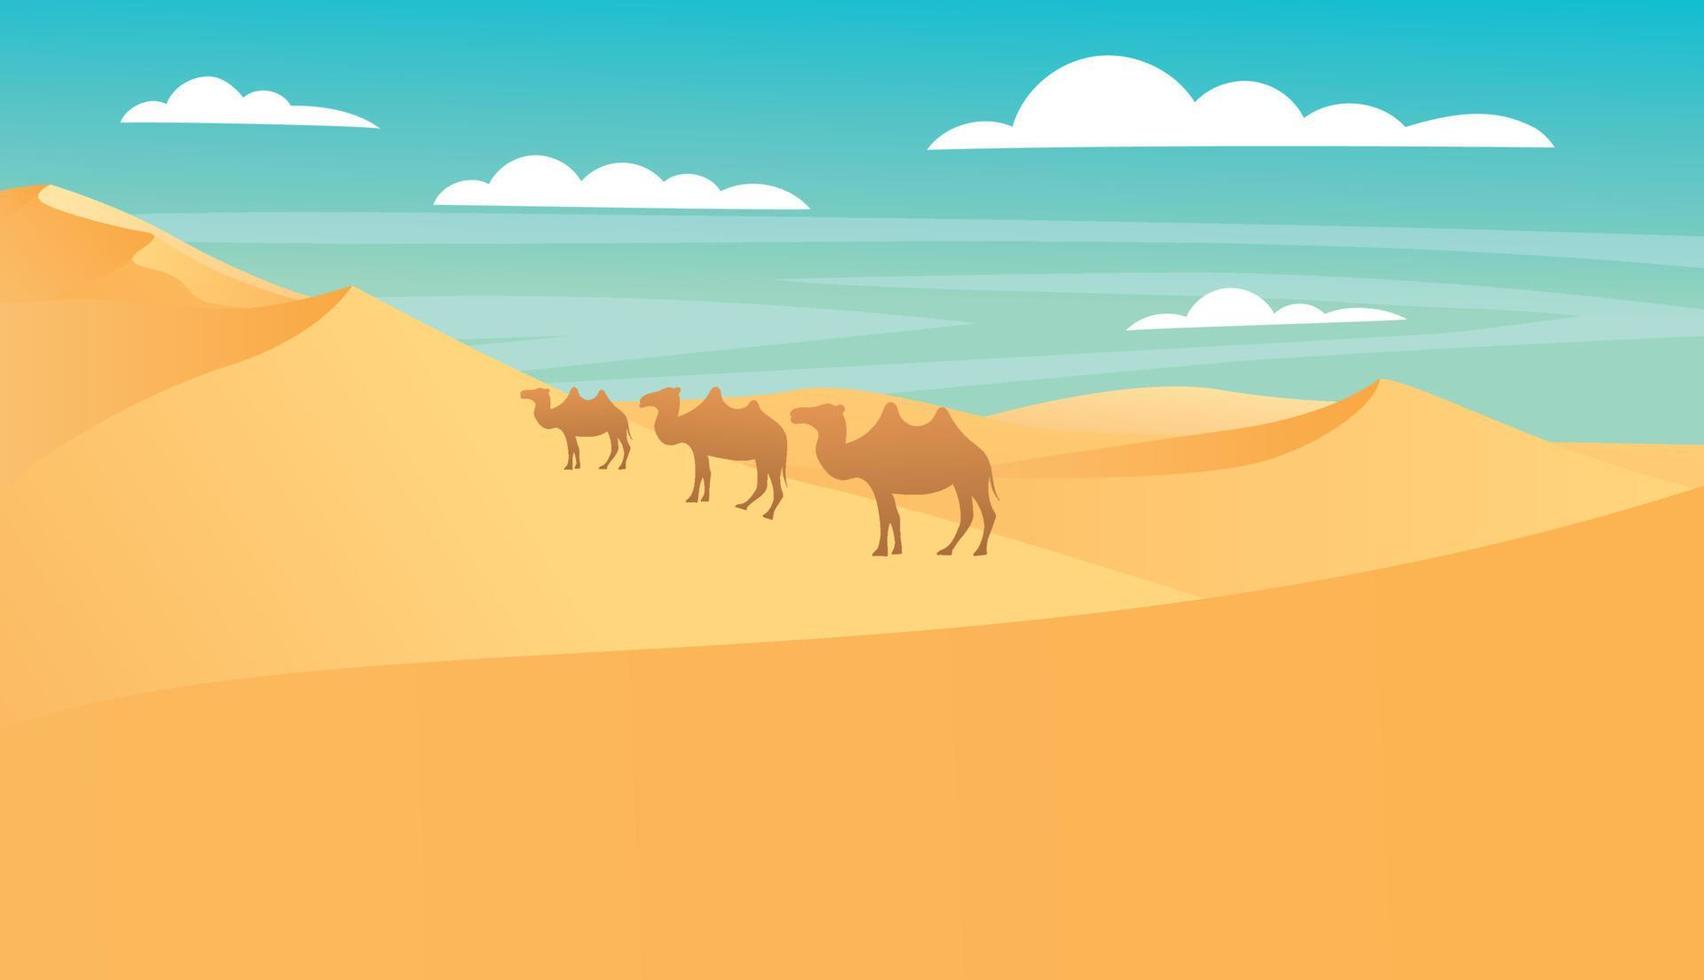 Wüstenlandschaft mit goldenen Sanddünen unter blauem bewölktem Himmel mit wandernden Kamelen. heißer trockener menschenleerer afrikanischer naturhintergrund mit parallaxenszene der gelben sandigen hügel, karikaturvektorillustration vektor